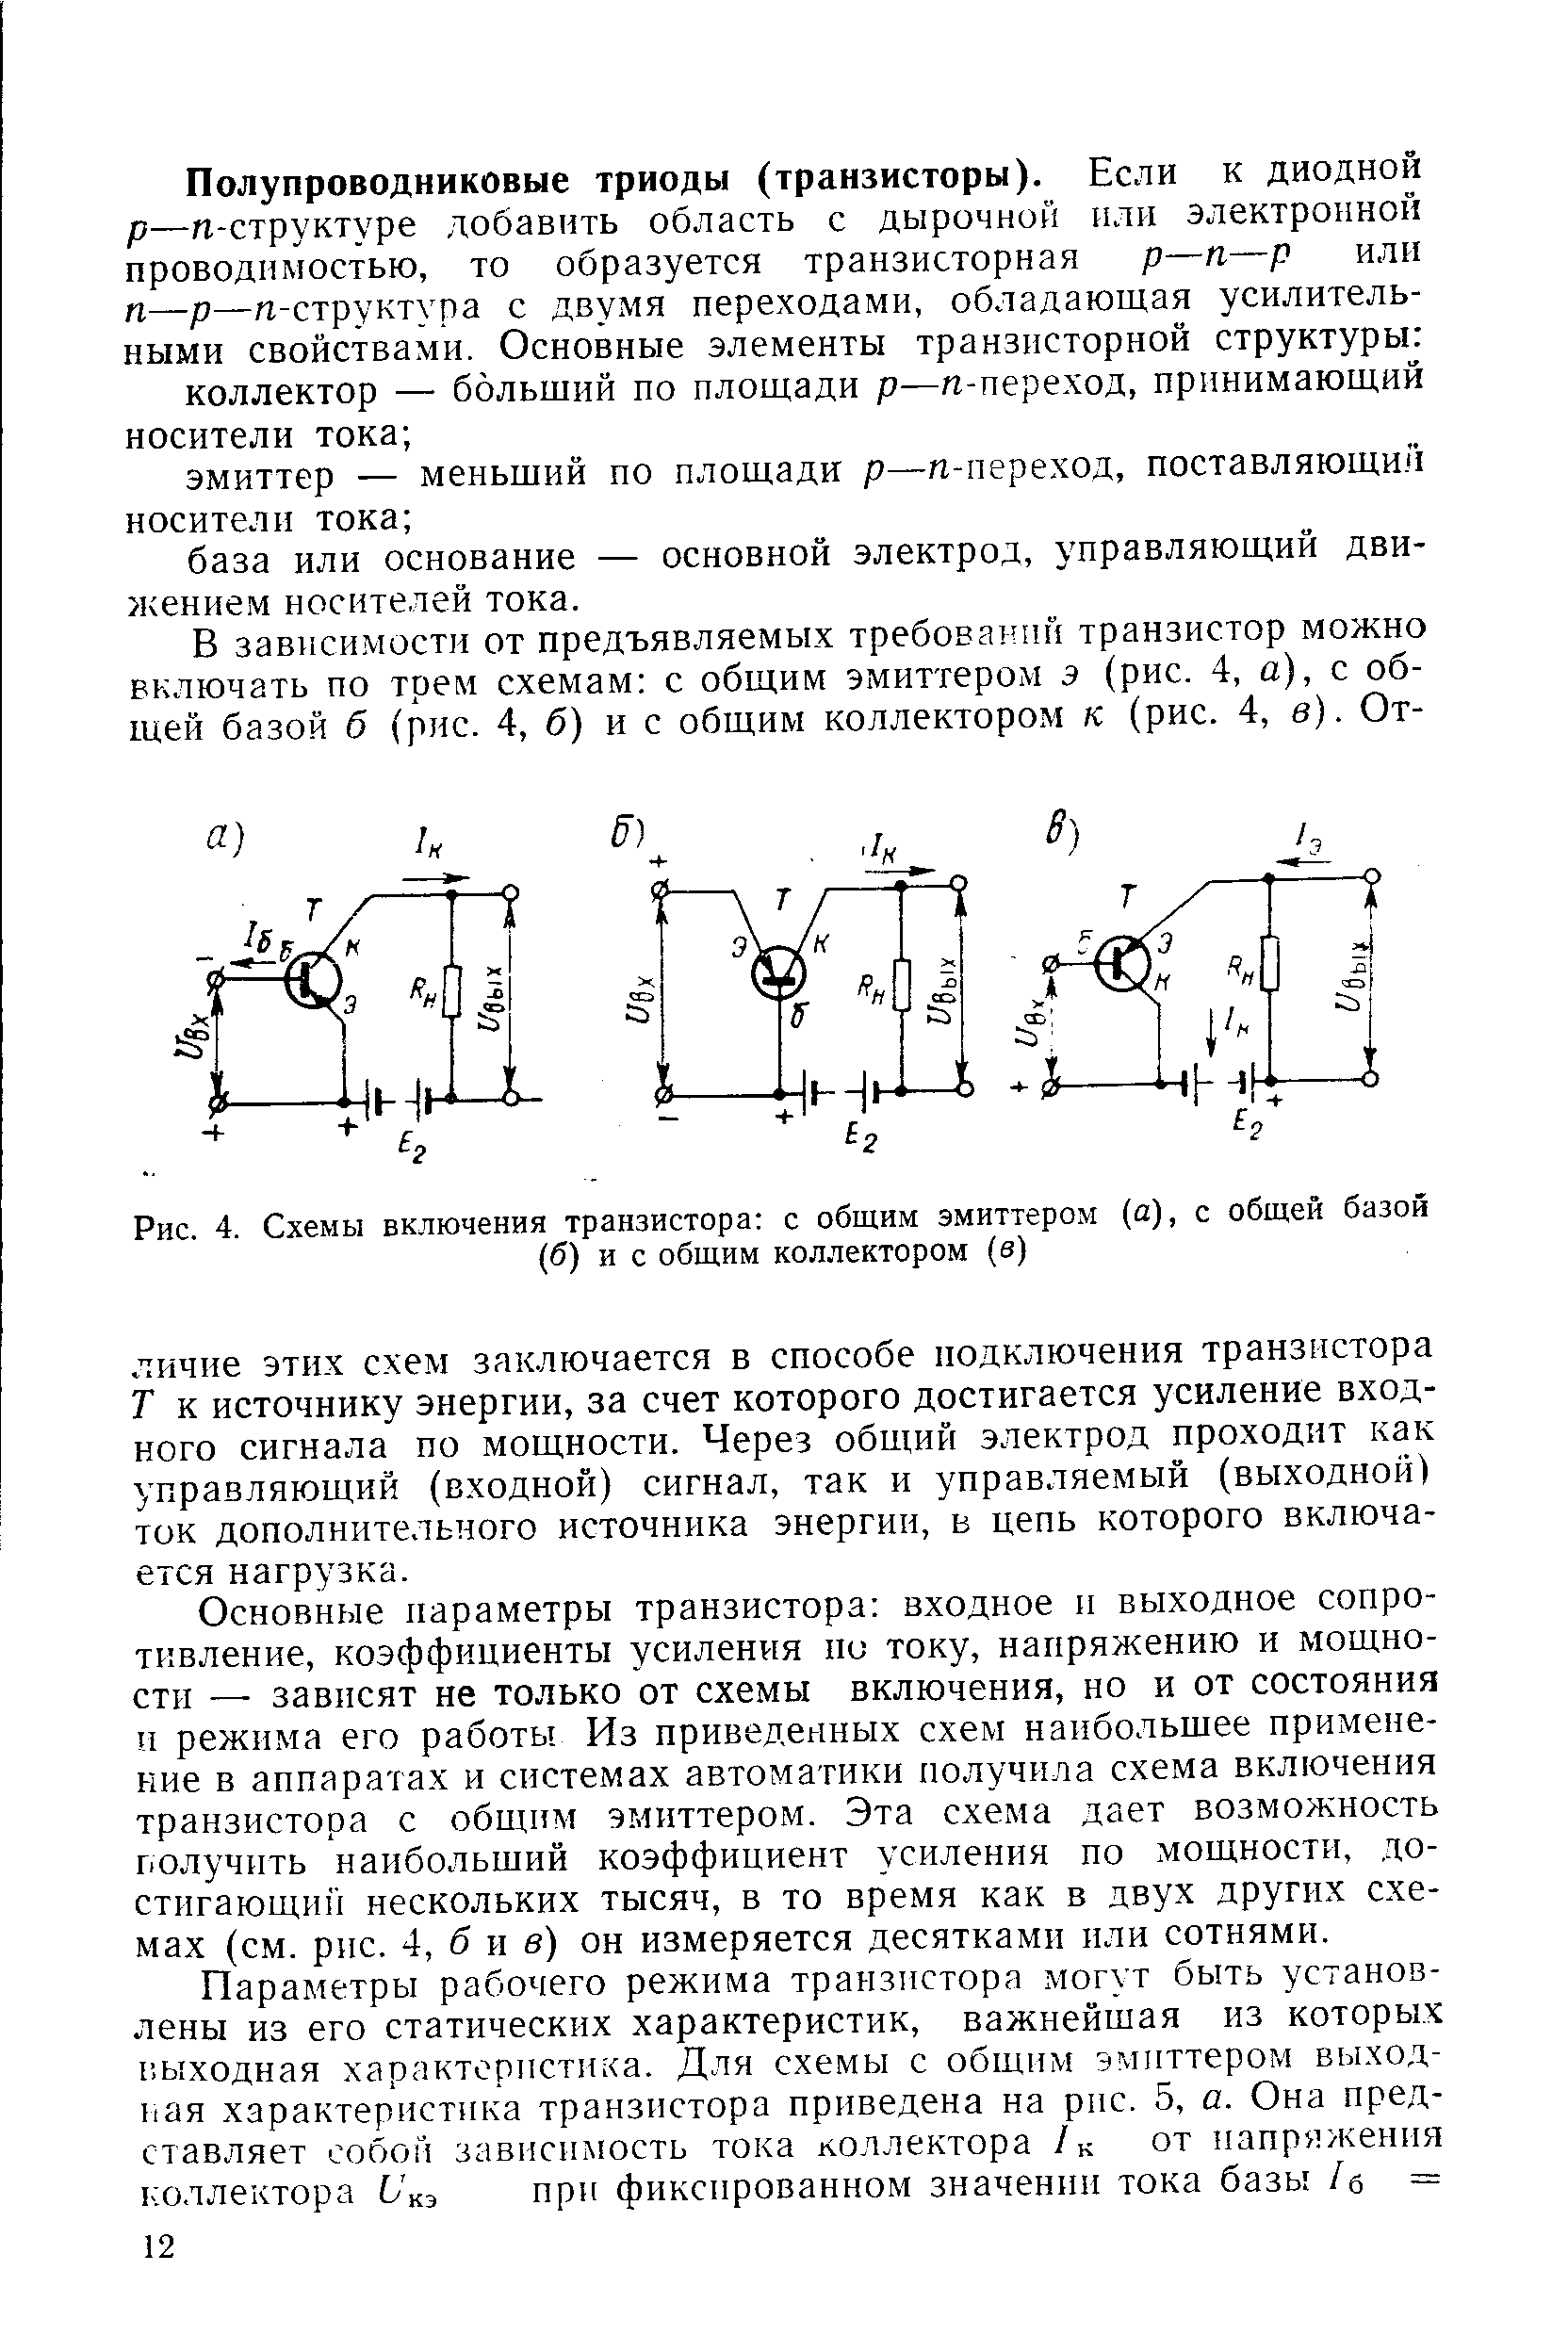 Рис. 4. Схемы включения транзистора с общим эмиттером (а), с общей базой (б) и с общим коллектором (е)
